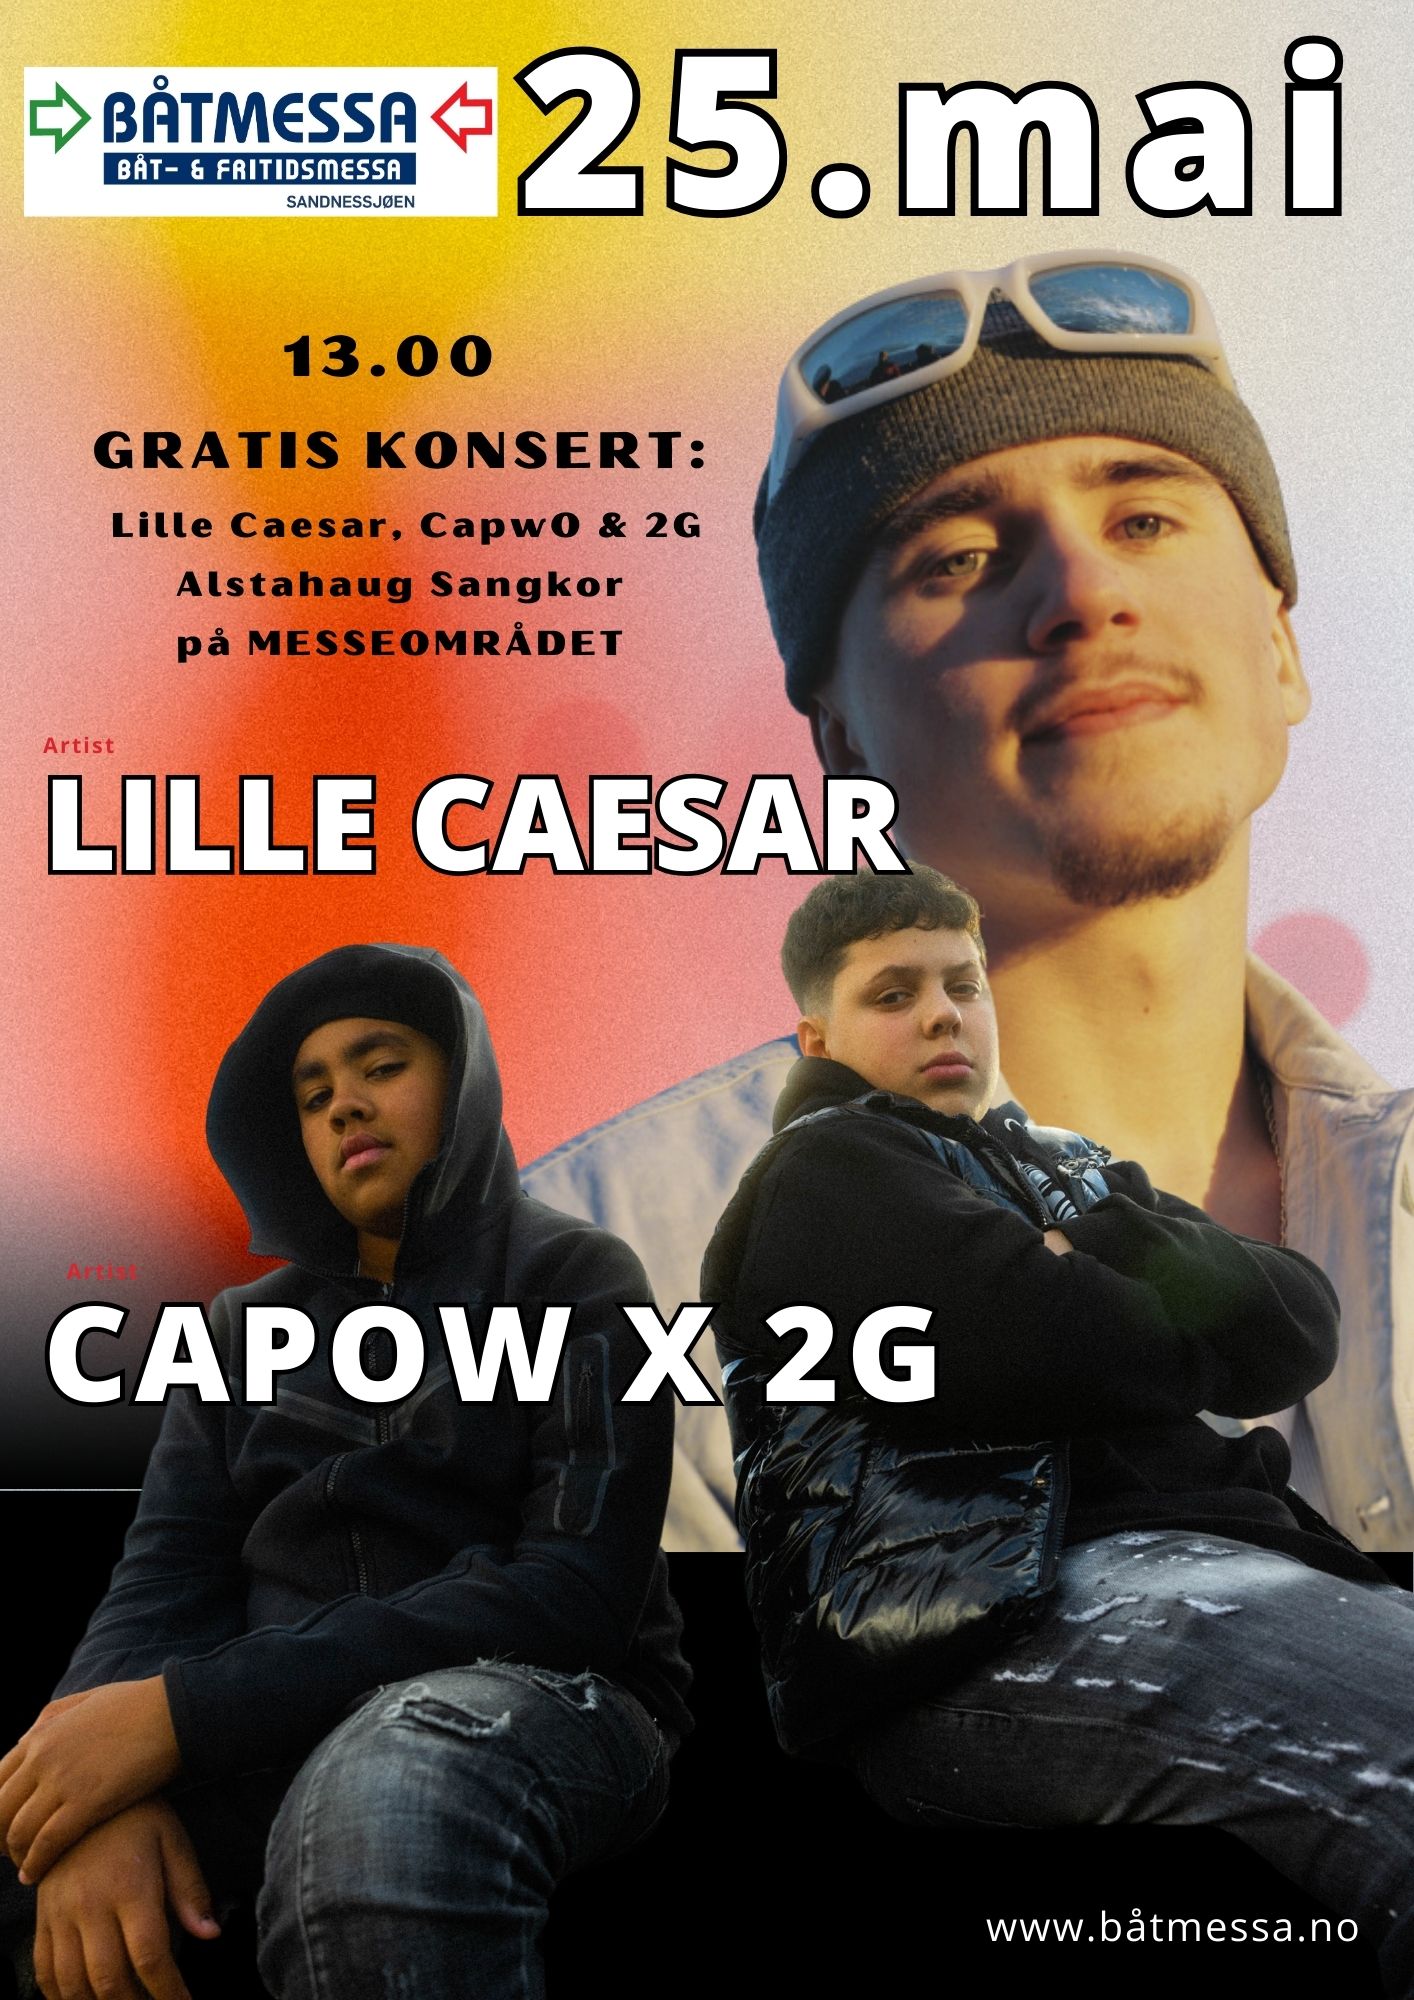 13.00 GRATIS KONSERT Lille Caesar CapwO 2G Alstahaug Sangkor pa MESSEOMRADET